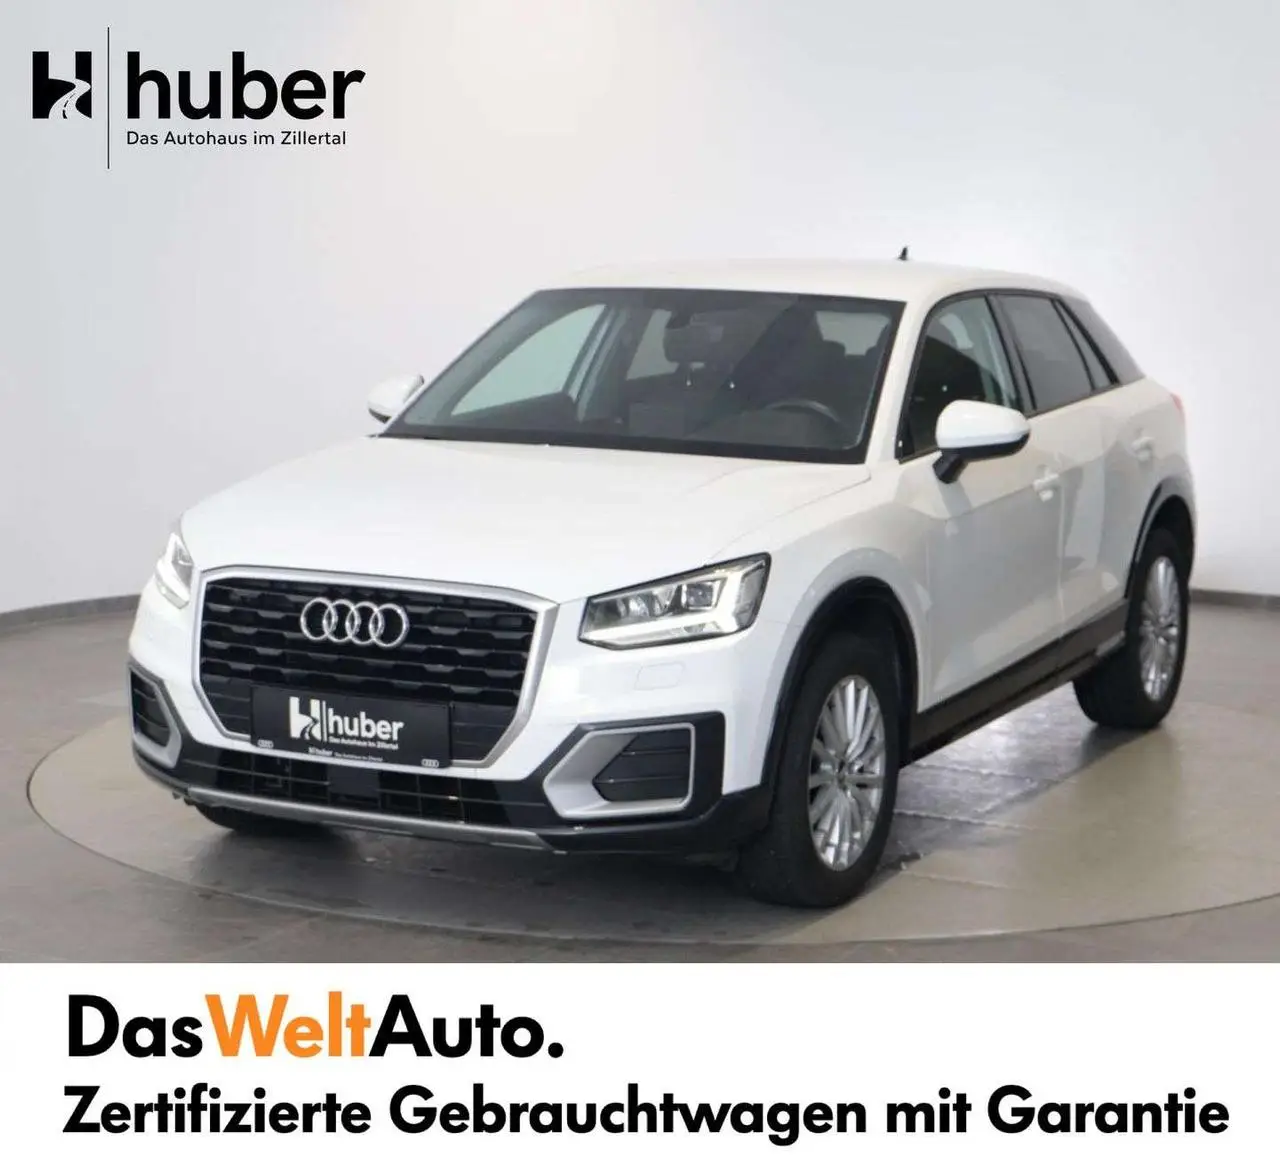 Photo 1 : Audi Q2 2020 Petrol